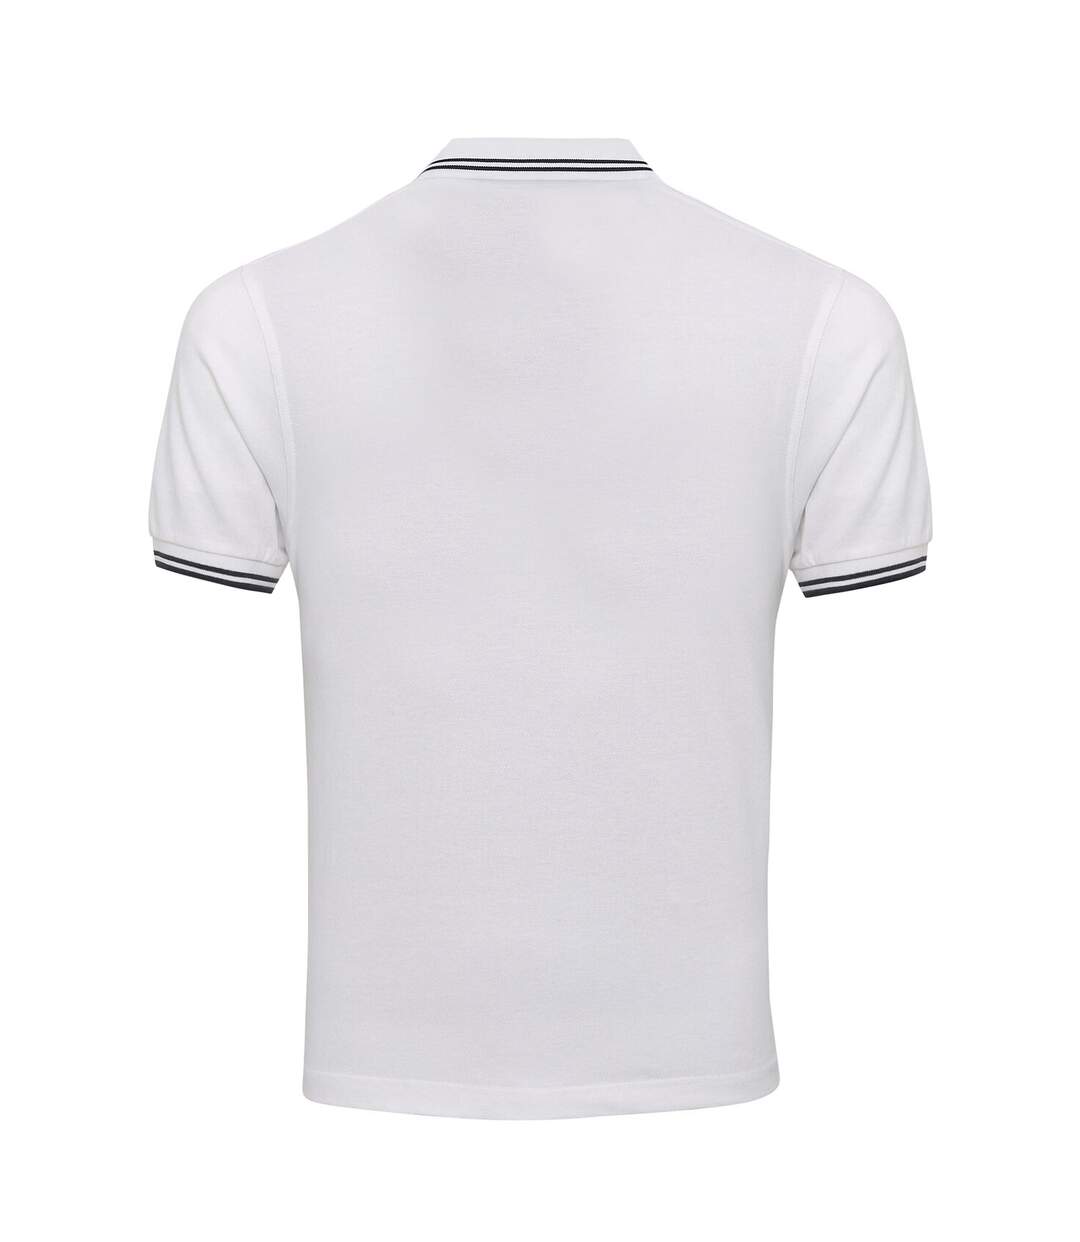 AWDis Mens Stretch Tipped Piqu Polo Shirt (White/Navy)